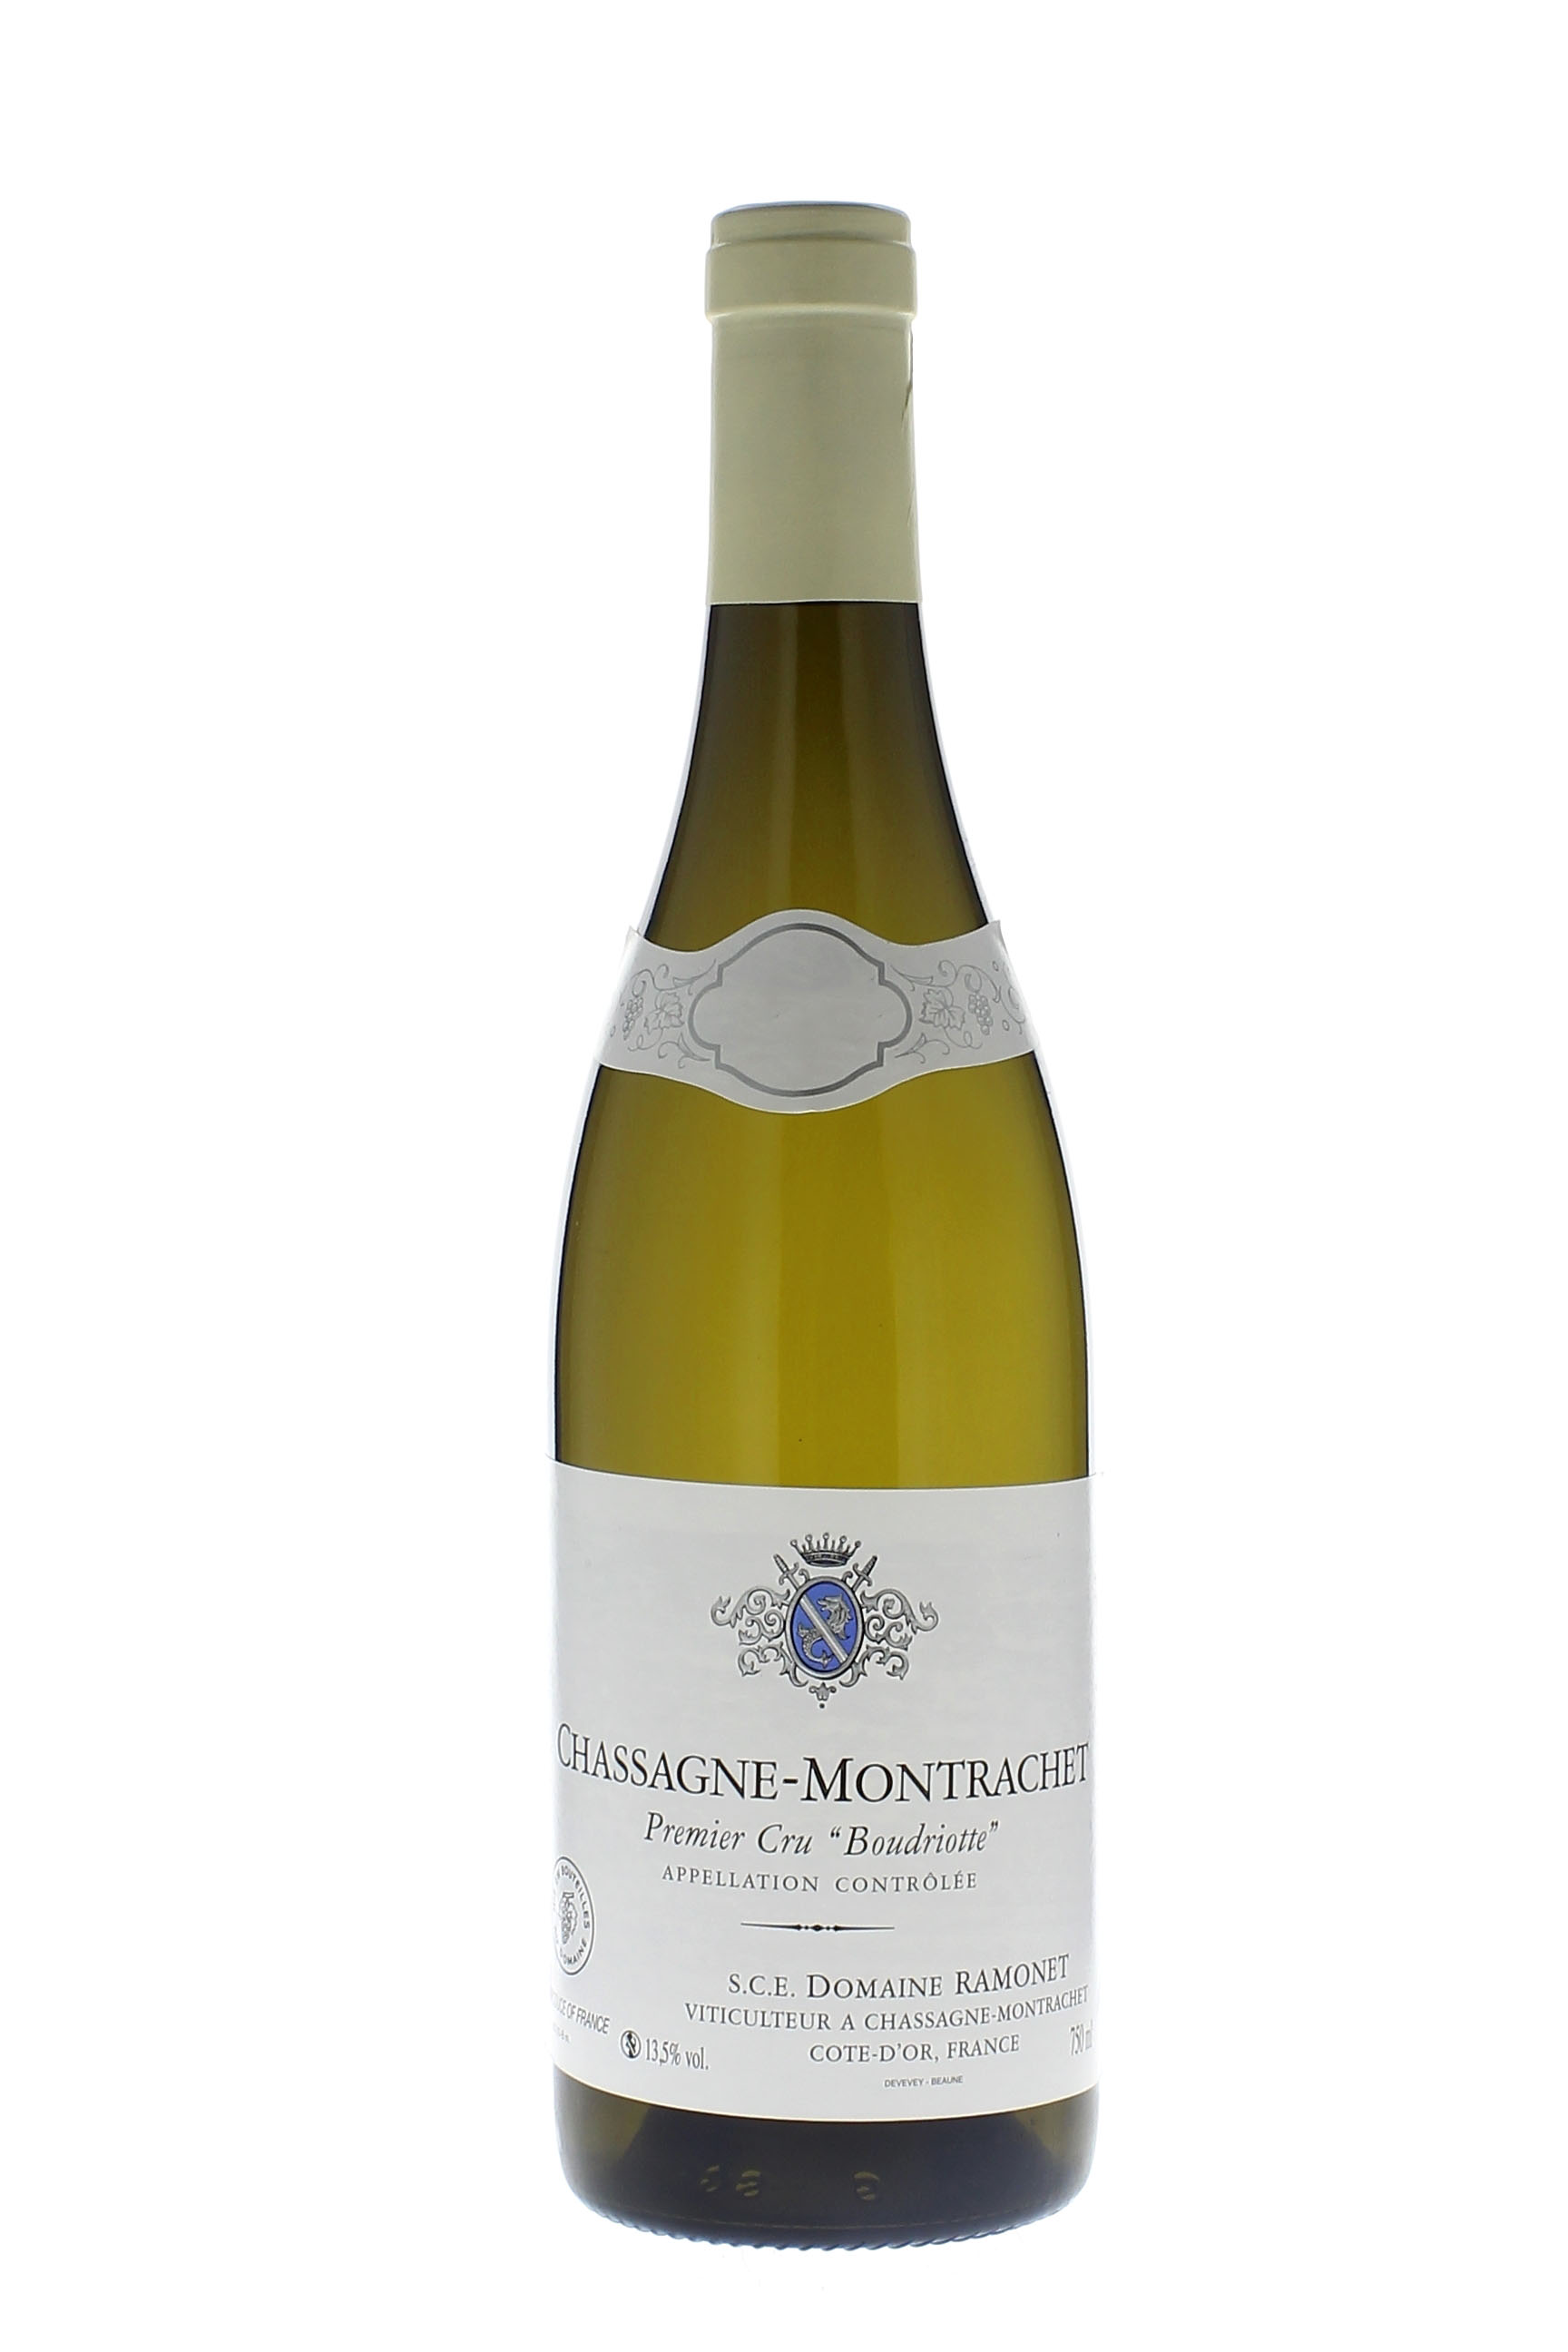 Chassagne montrachet 1er cru boudriottes 2016 Domaine RAMONET, Bourgogne blanc